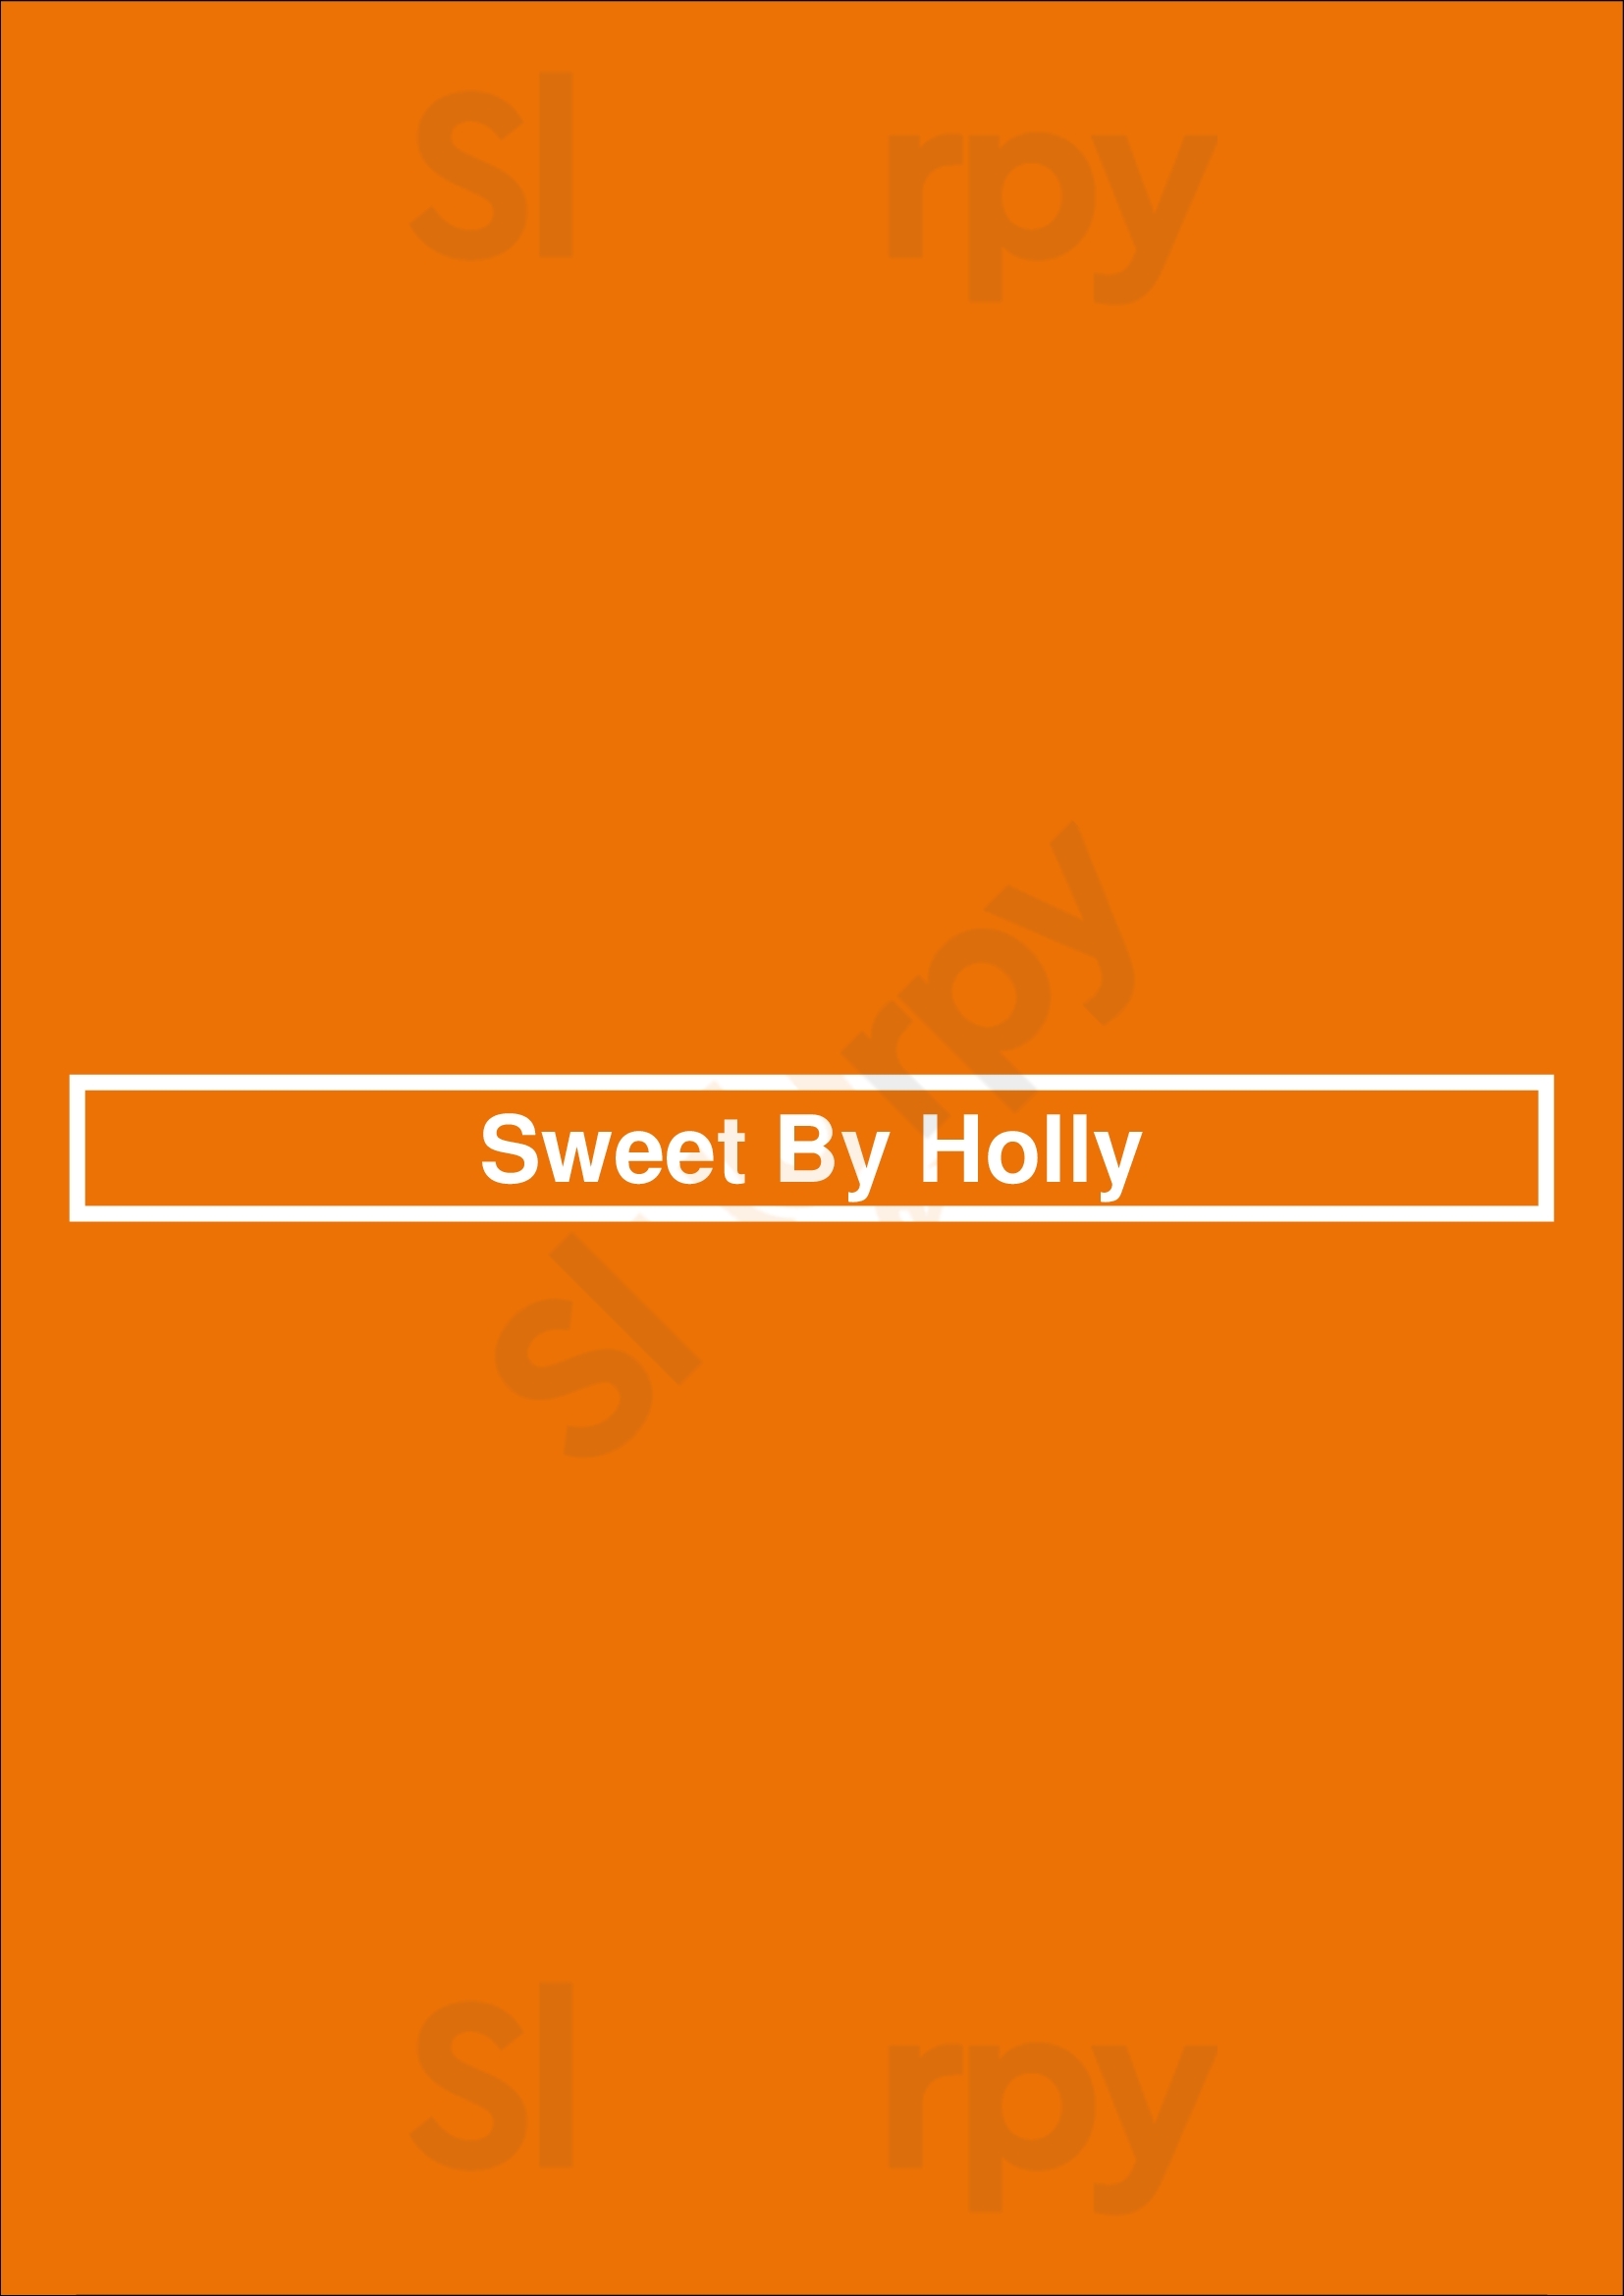 Sweet By Holly Jacksonville Menu - 1